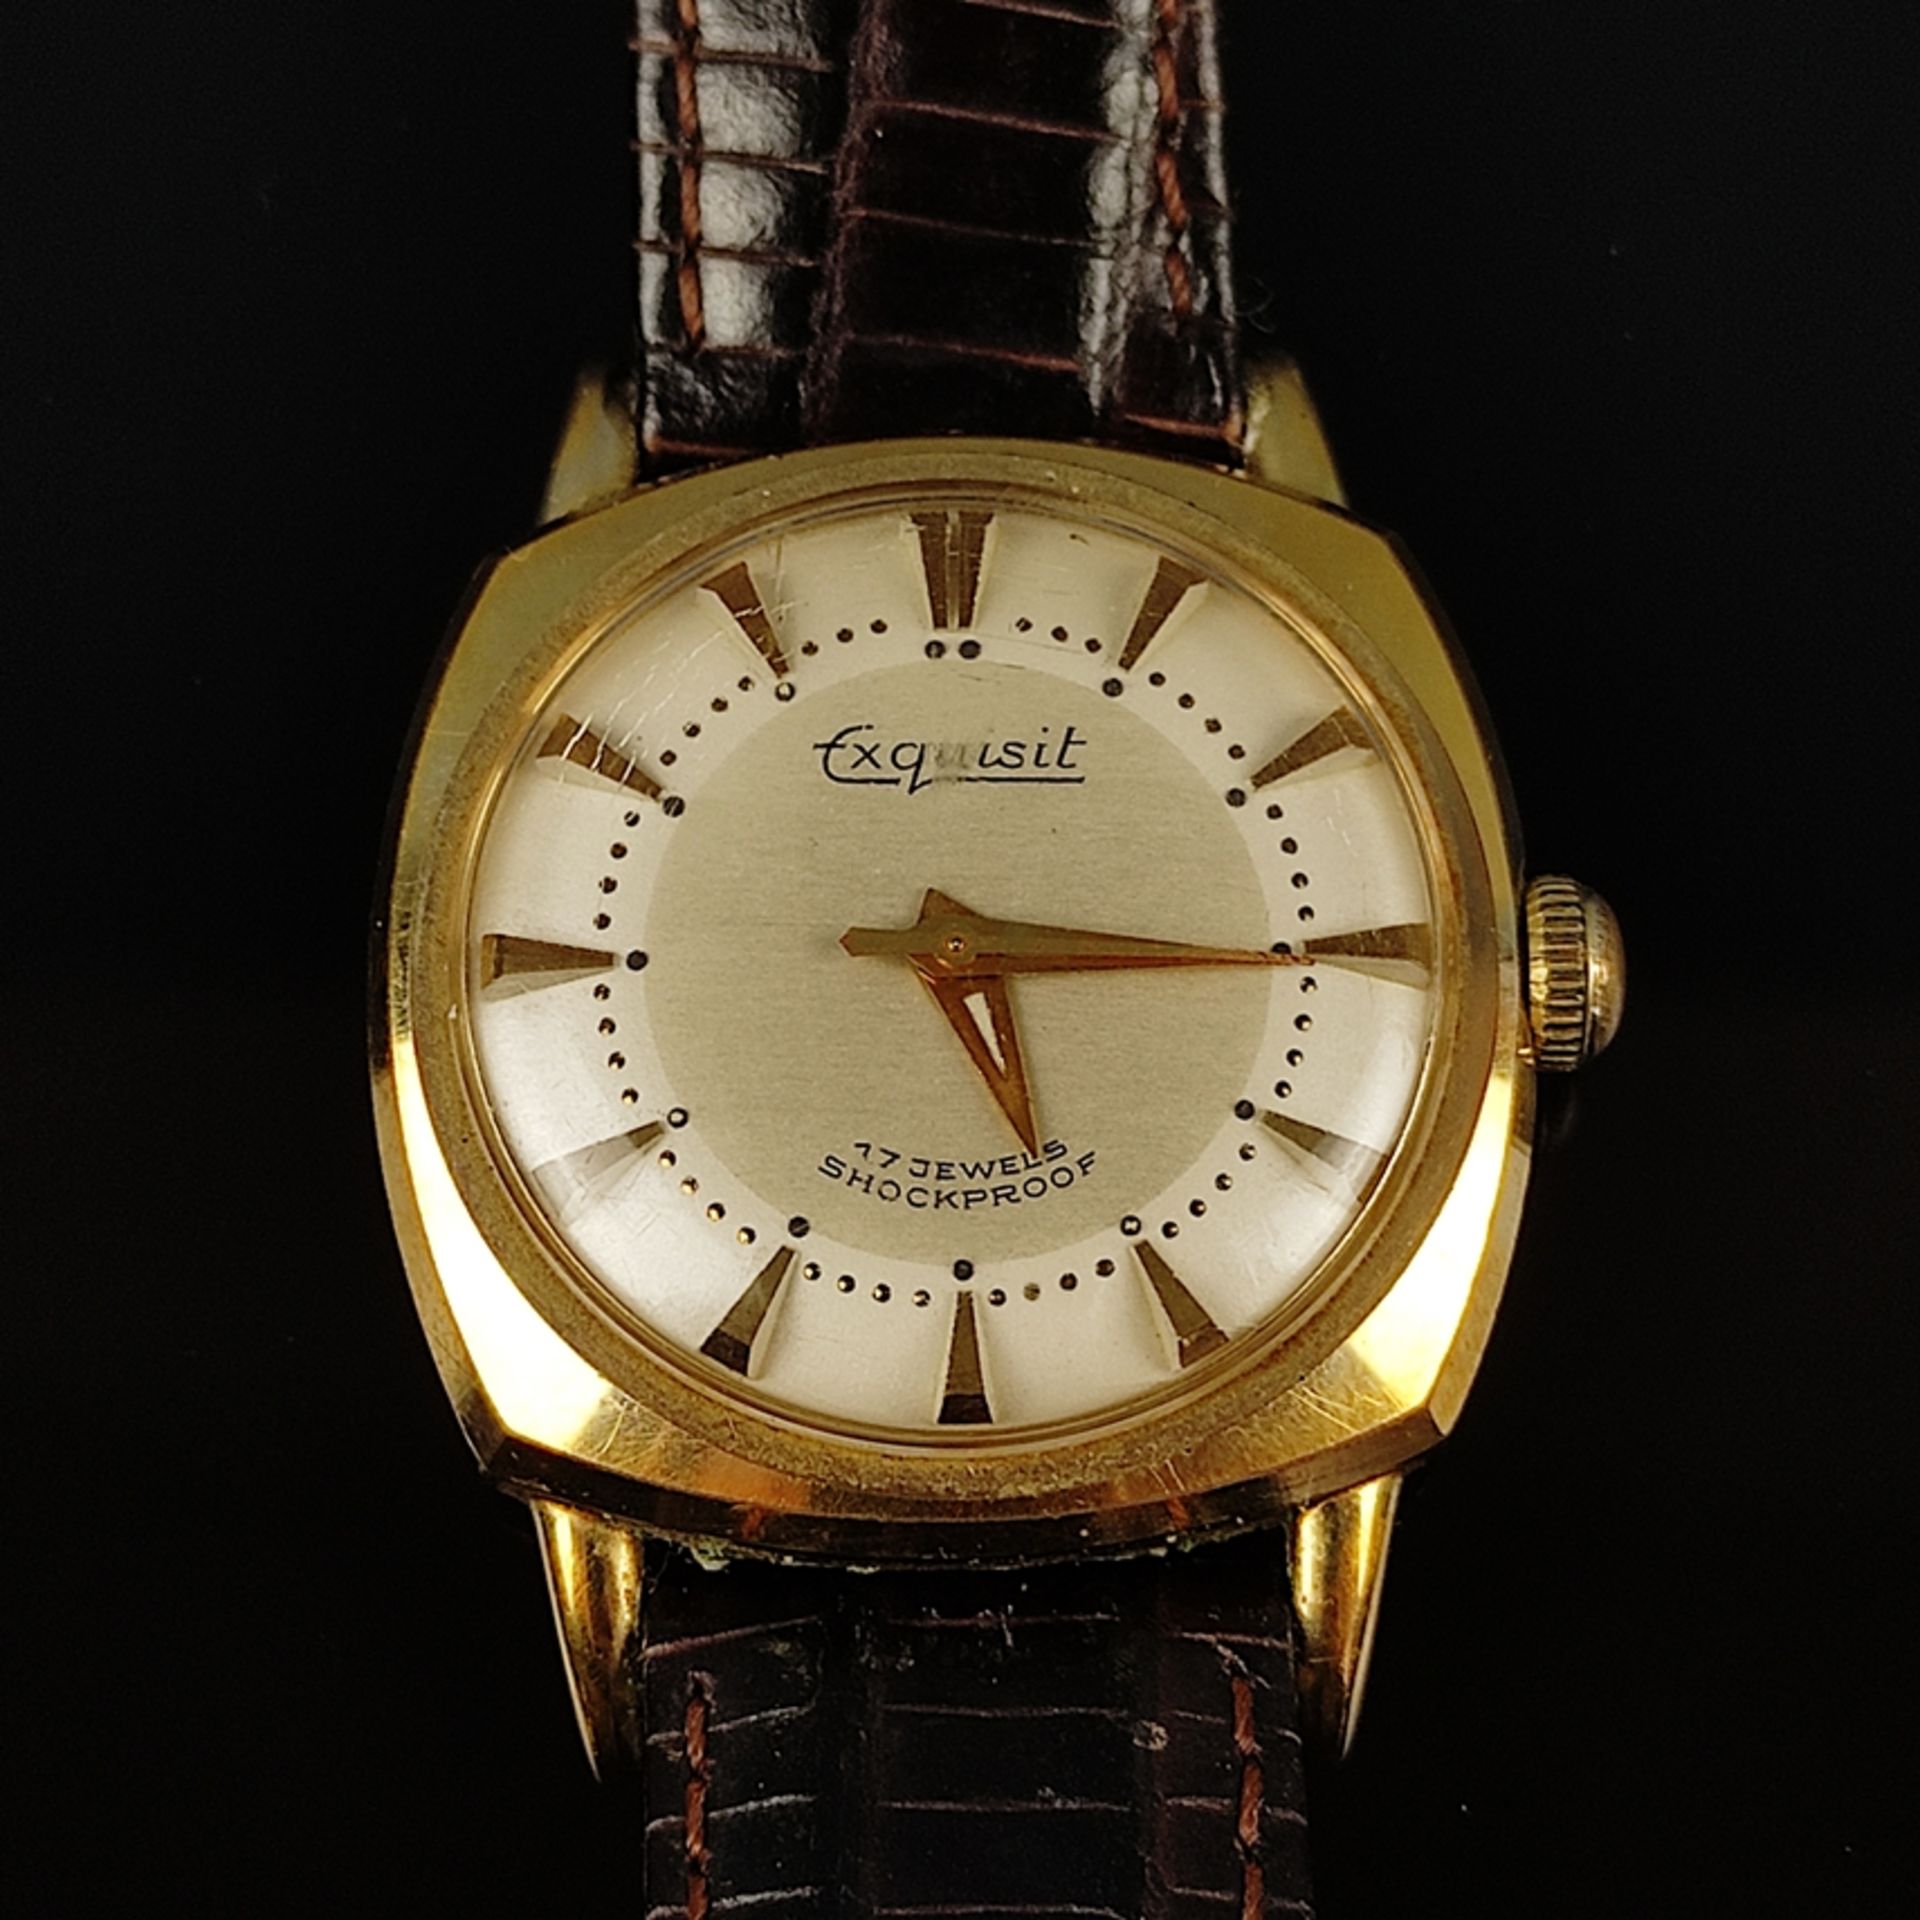 Zwei Armbanduhren, Oxford 17 Jewels und Exquisit, beide Handaufzug und laufen an, Oxford mit Datums - Bild 2 aus 5